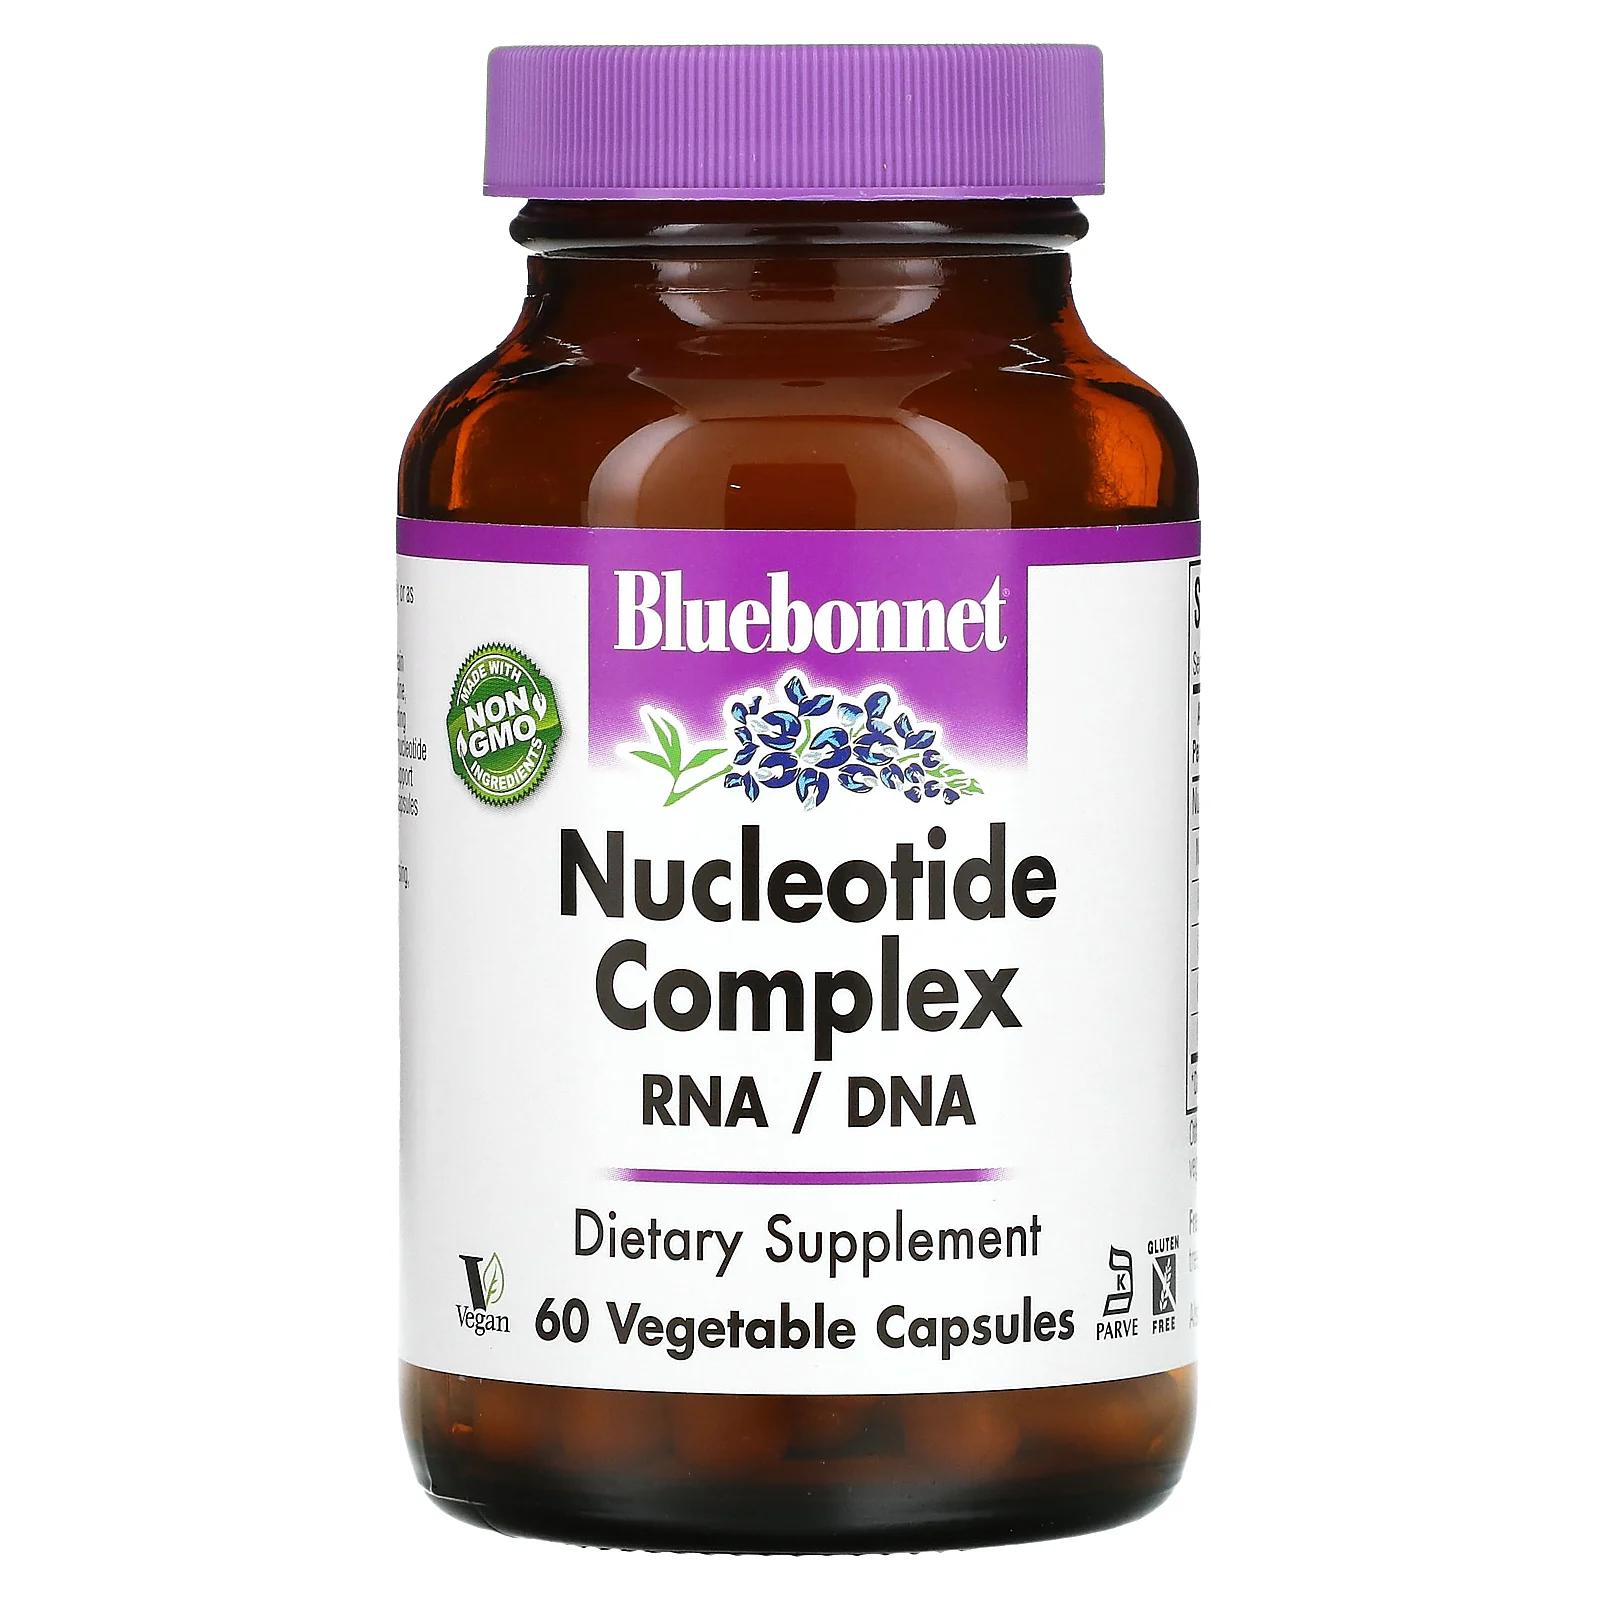 Bluebonnet Nutrition Комплекс нуклеотидов РНК/ДНК 60 капсул на растительной основе комплекс нуклеотидов nucleotide rna dnk 60 капсул bluebonnet nutrition